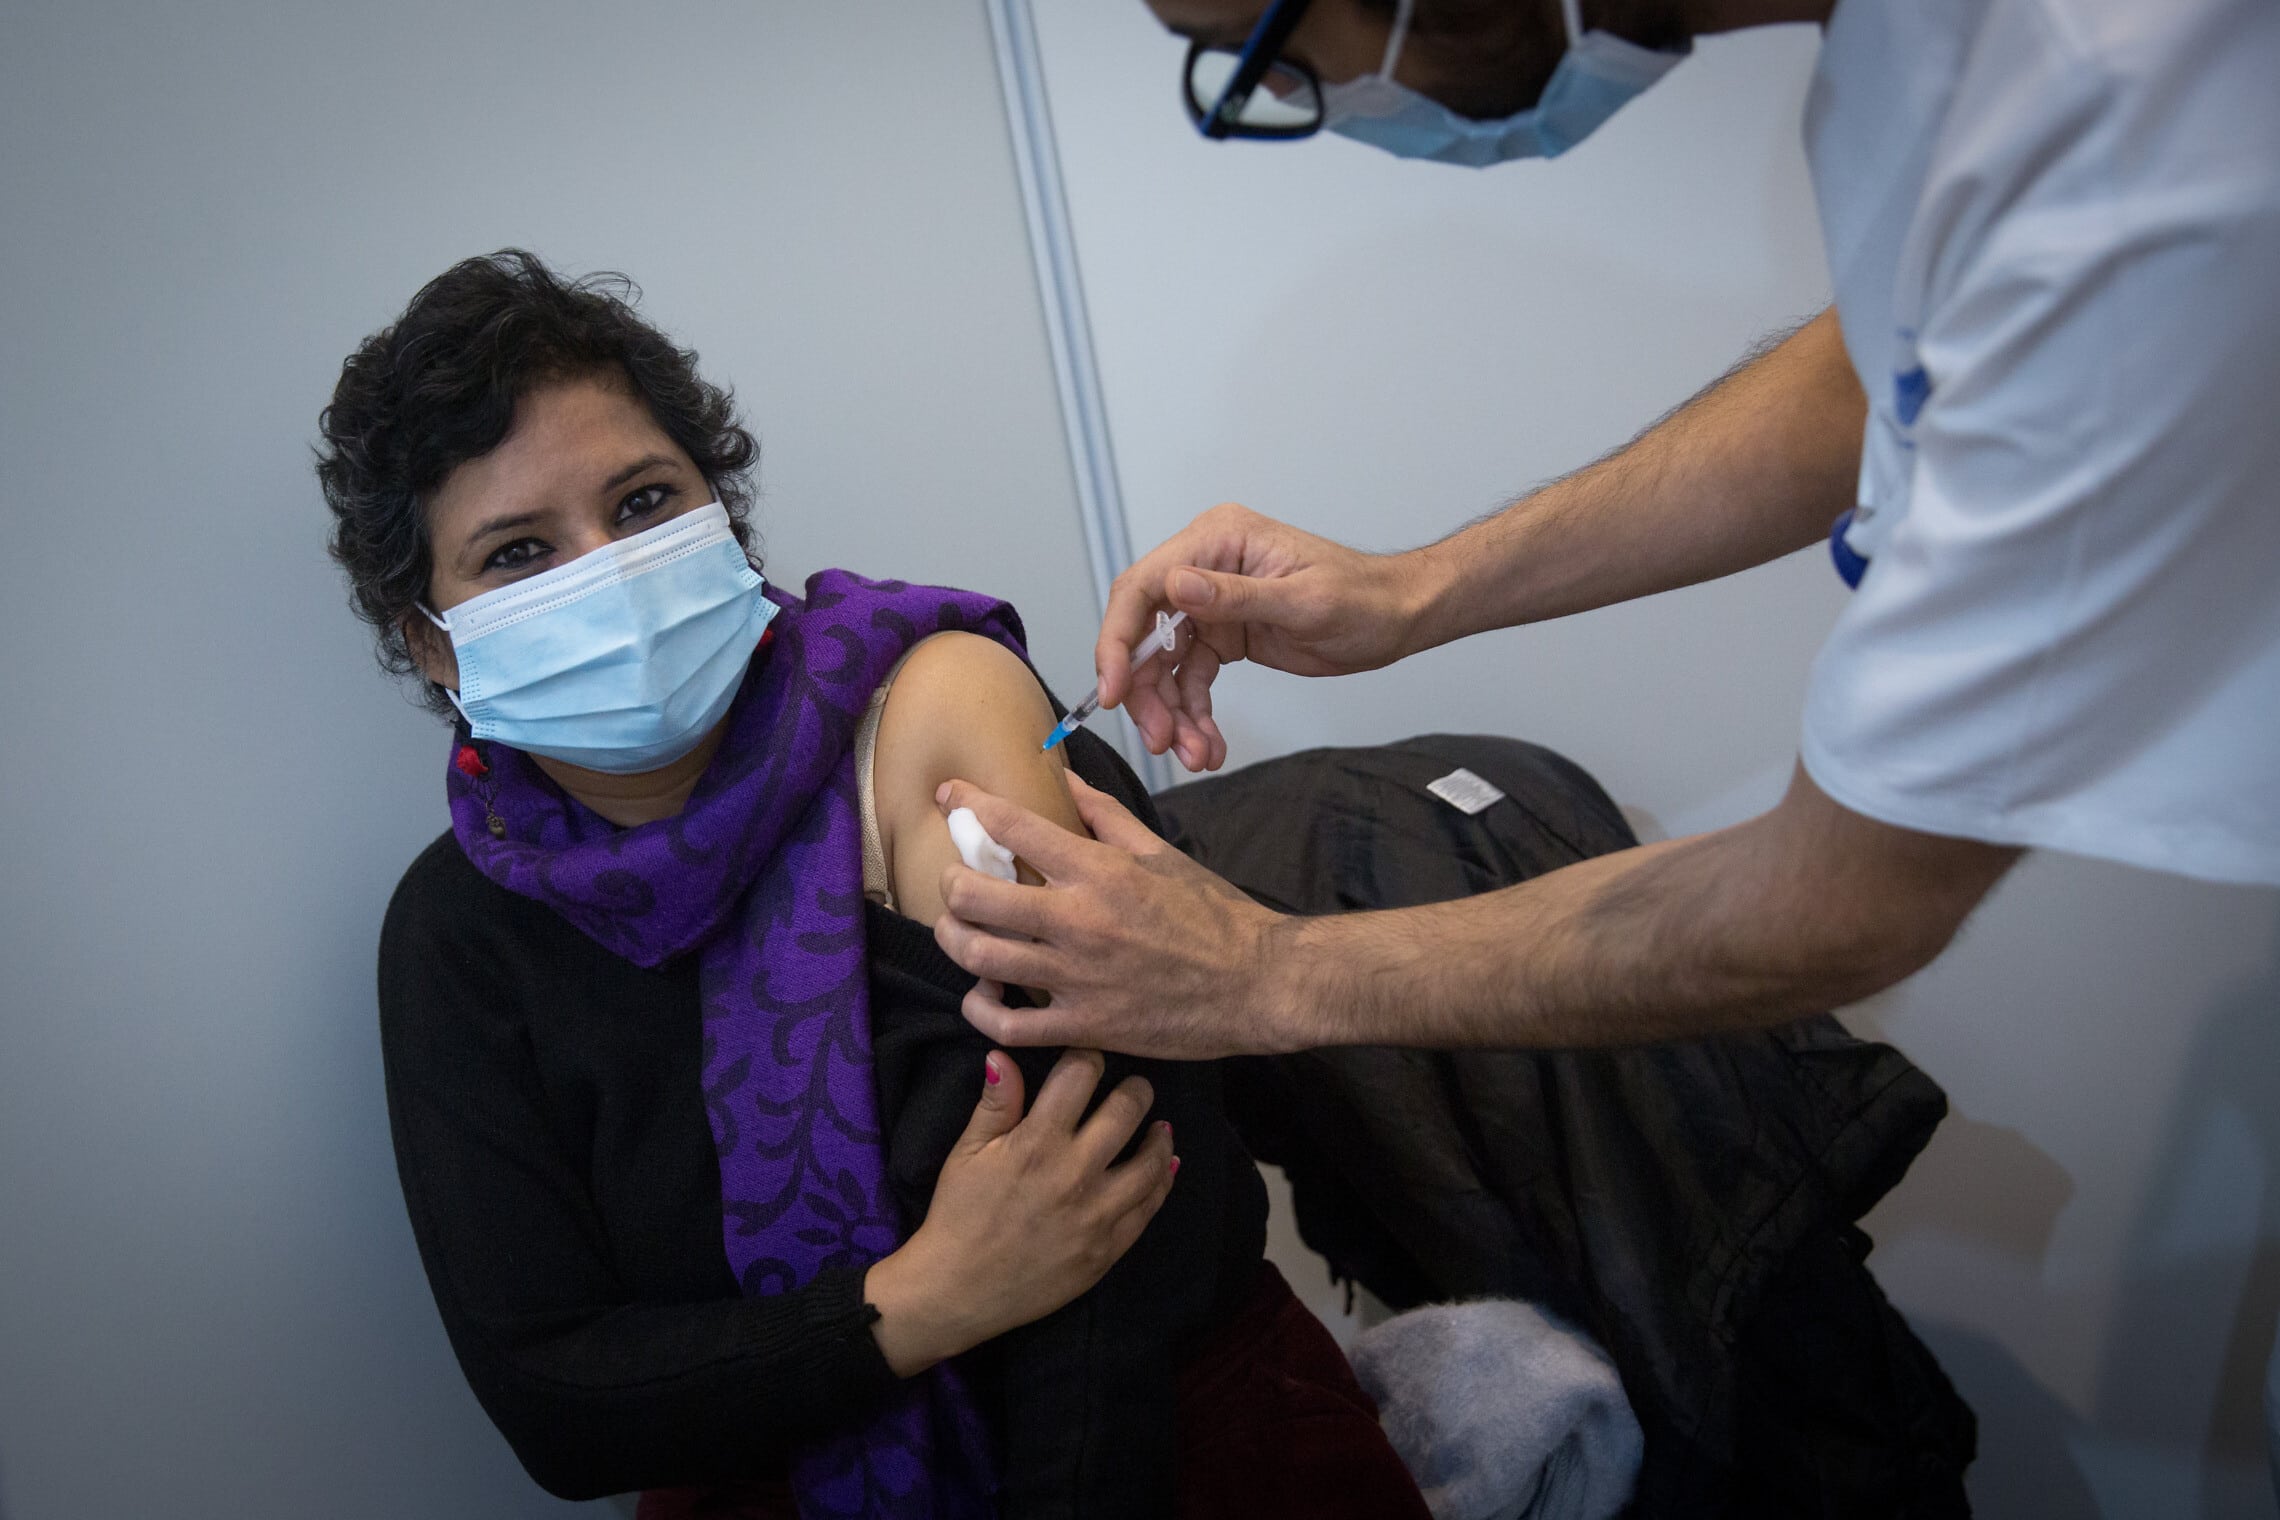 מטופלת מקבלת חיסון נגד קורונה במתחם החיסונים של עיריית תל אביב ושל בית החולים איכילוב בכיכר רבין, 19 בינואר 2021 (צילום: מרים אלסטר, פלאש 90)